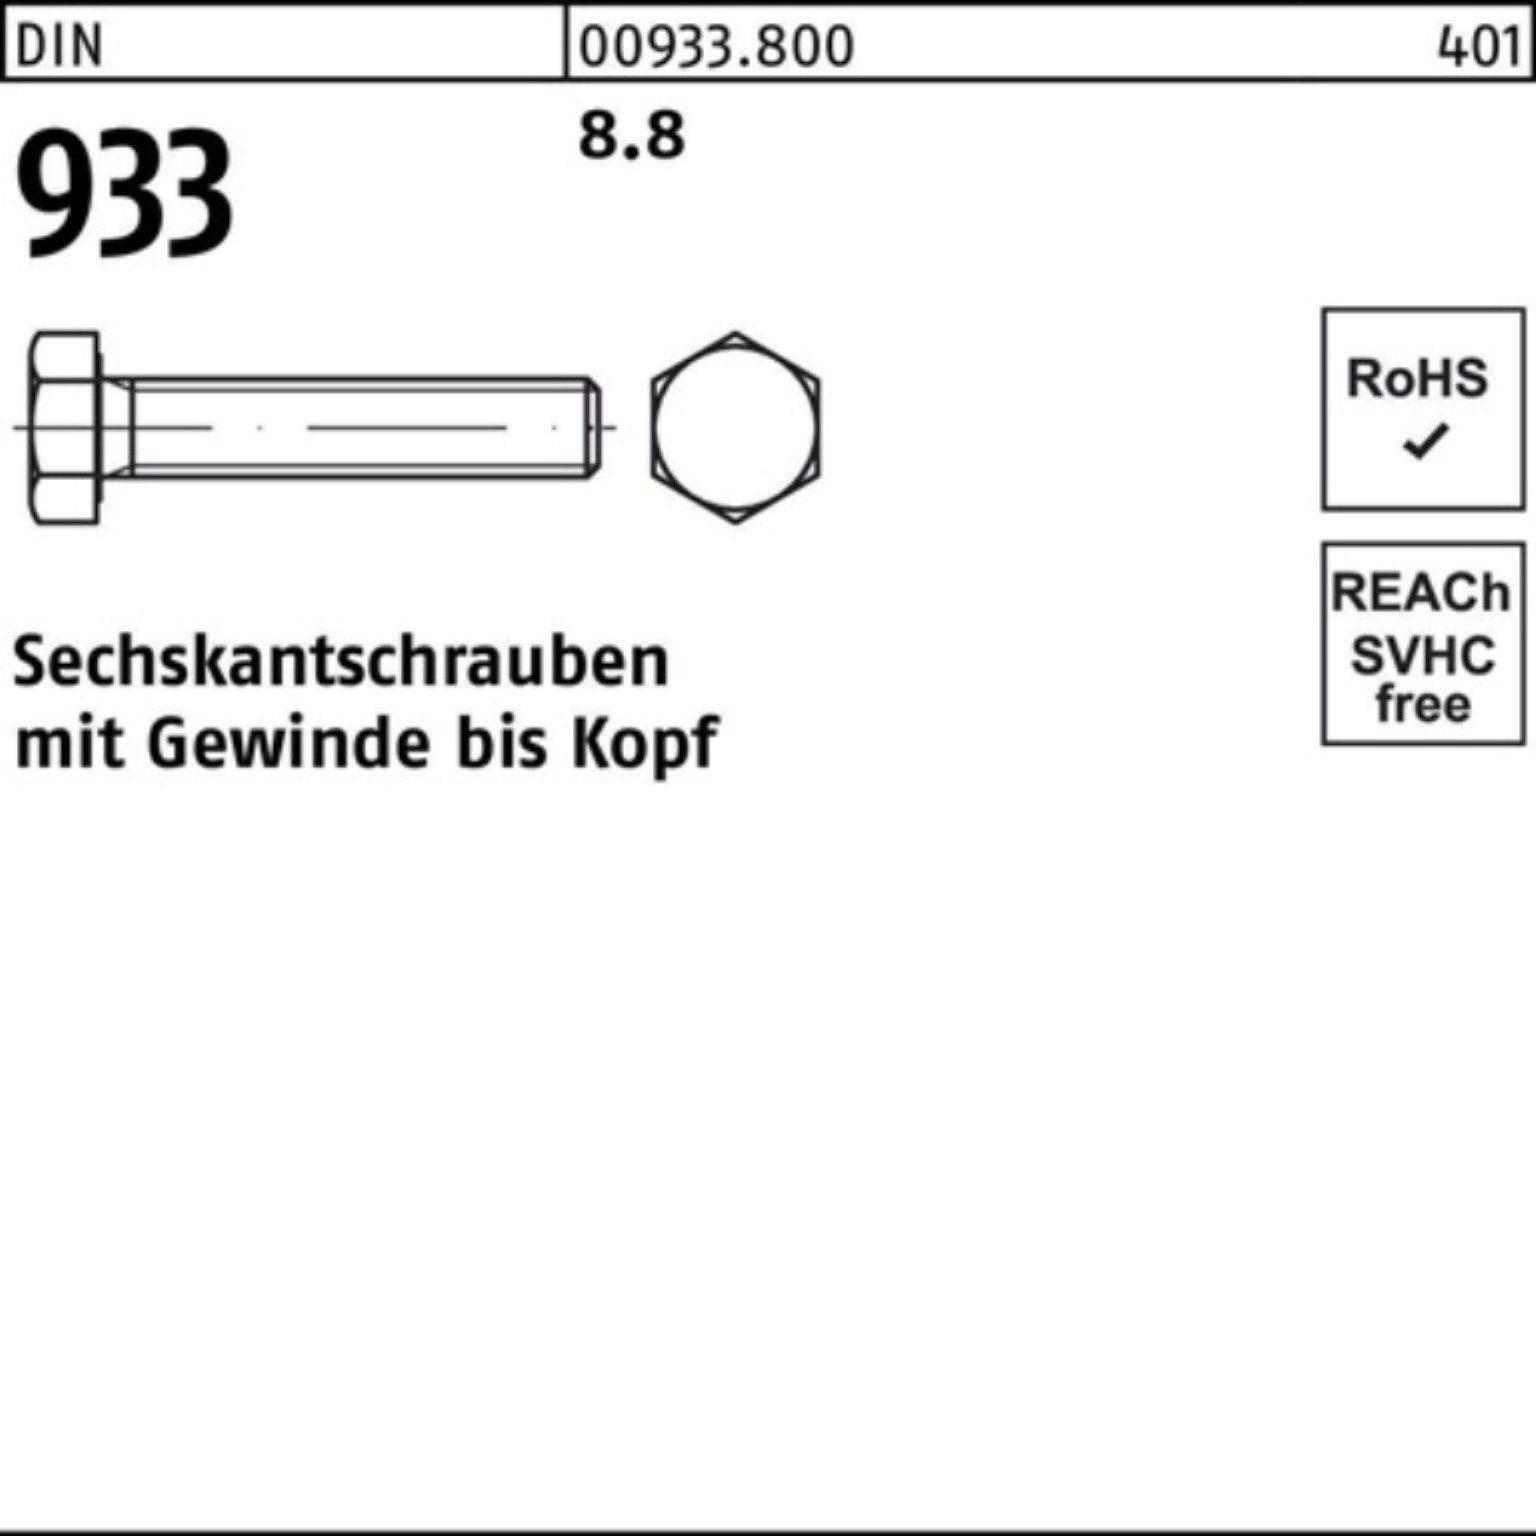 DIN 60 M30x Sechskantschraube Stück Sechskantschraube 933 1 100er Pack 8.8 DIN VG 933 8 Reyher